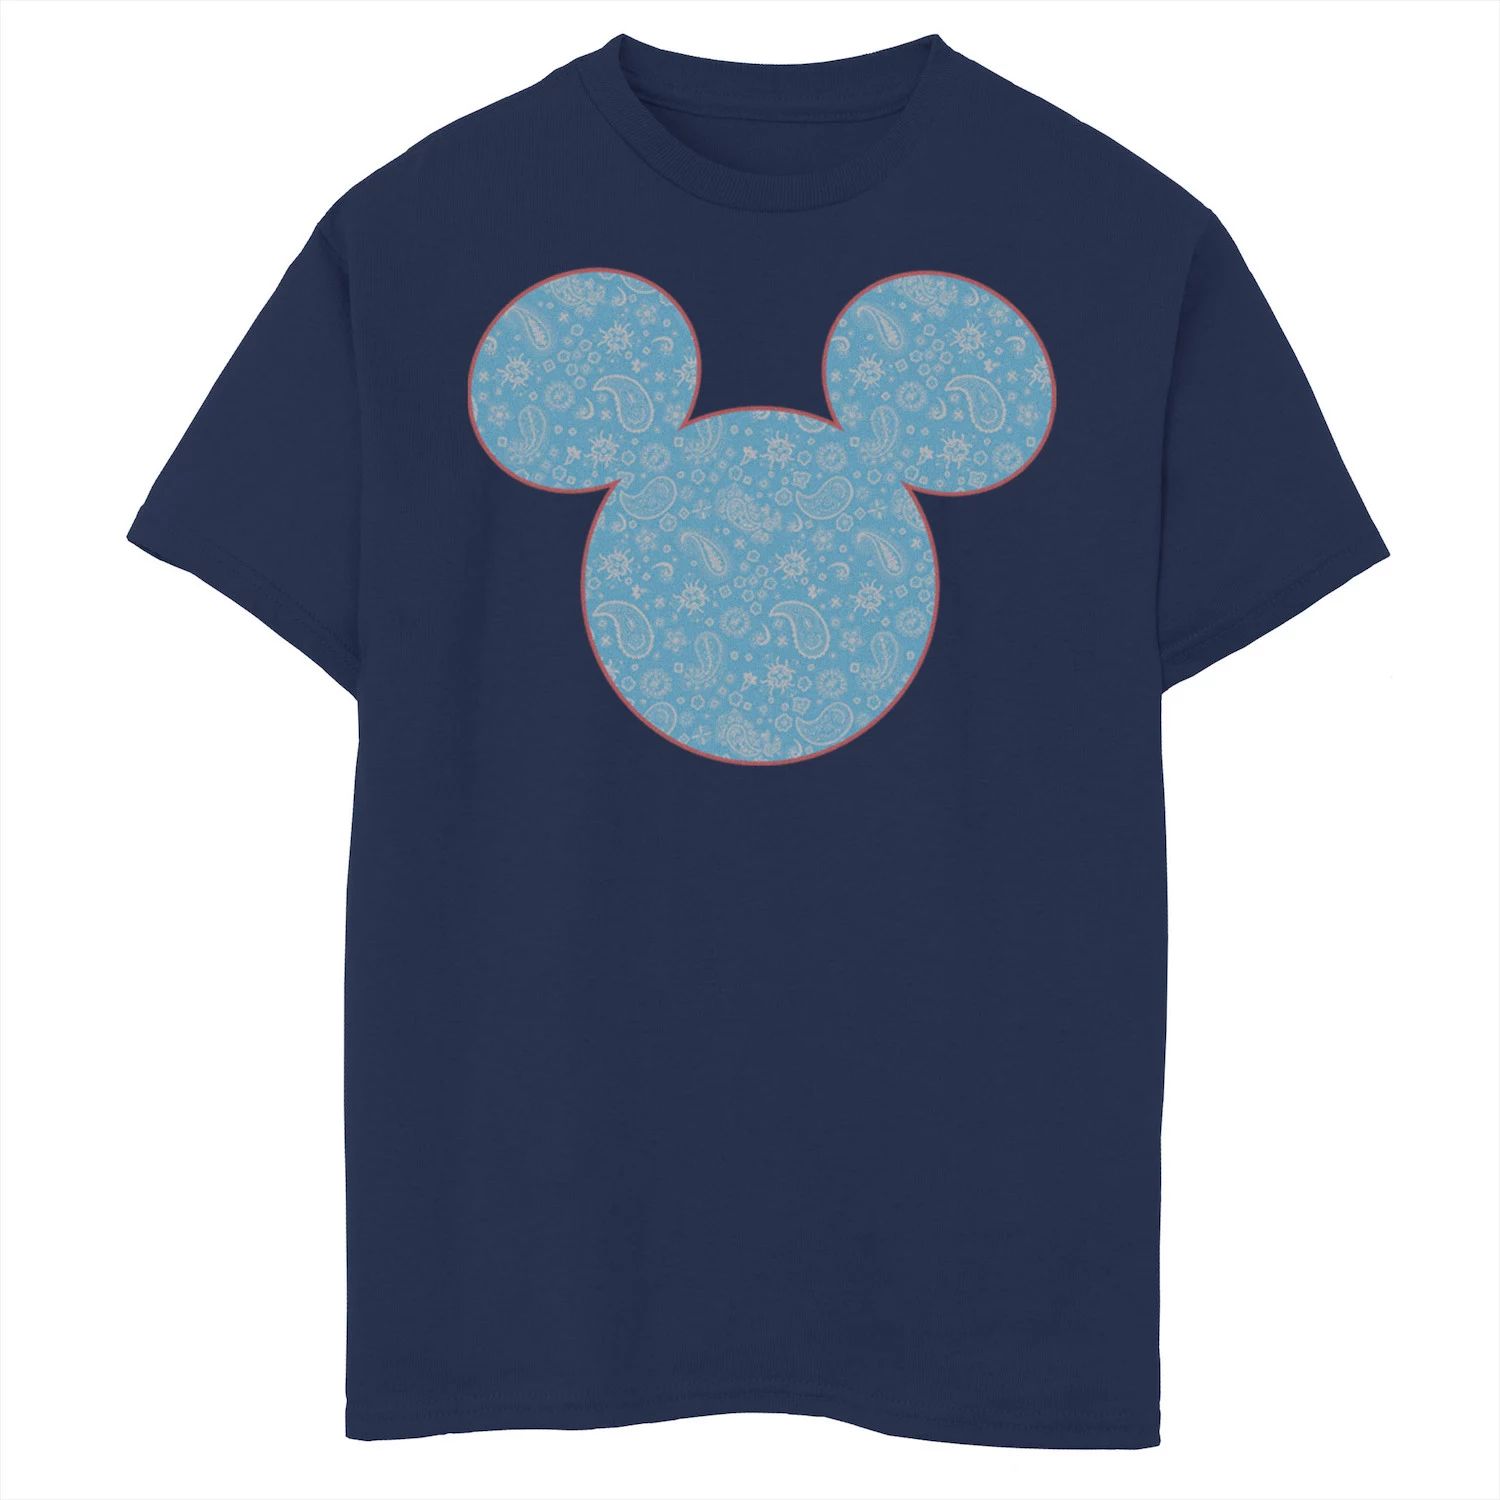 Синяя футболка с рисунком Микки Мауса и друзей Disney для мальчиков 8–20 лет с рисунком Микки Пейсли Disney толстовка с рисунком микки мауса disney для мальчиков 8–20 лет красно белая и с рисунком микки disney